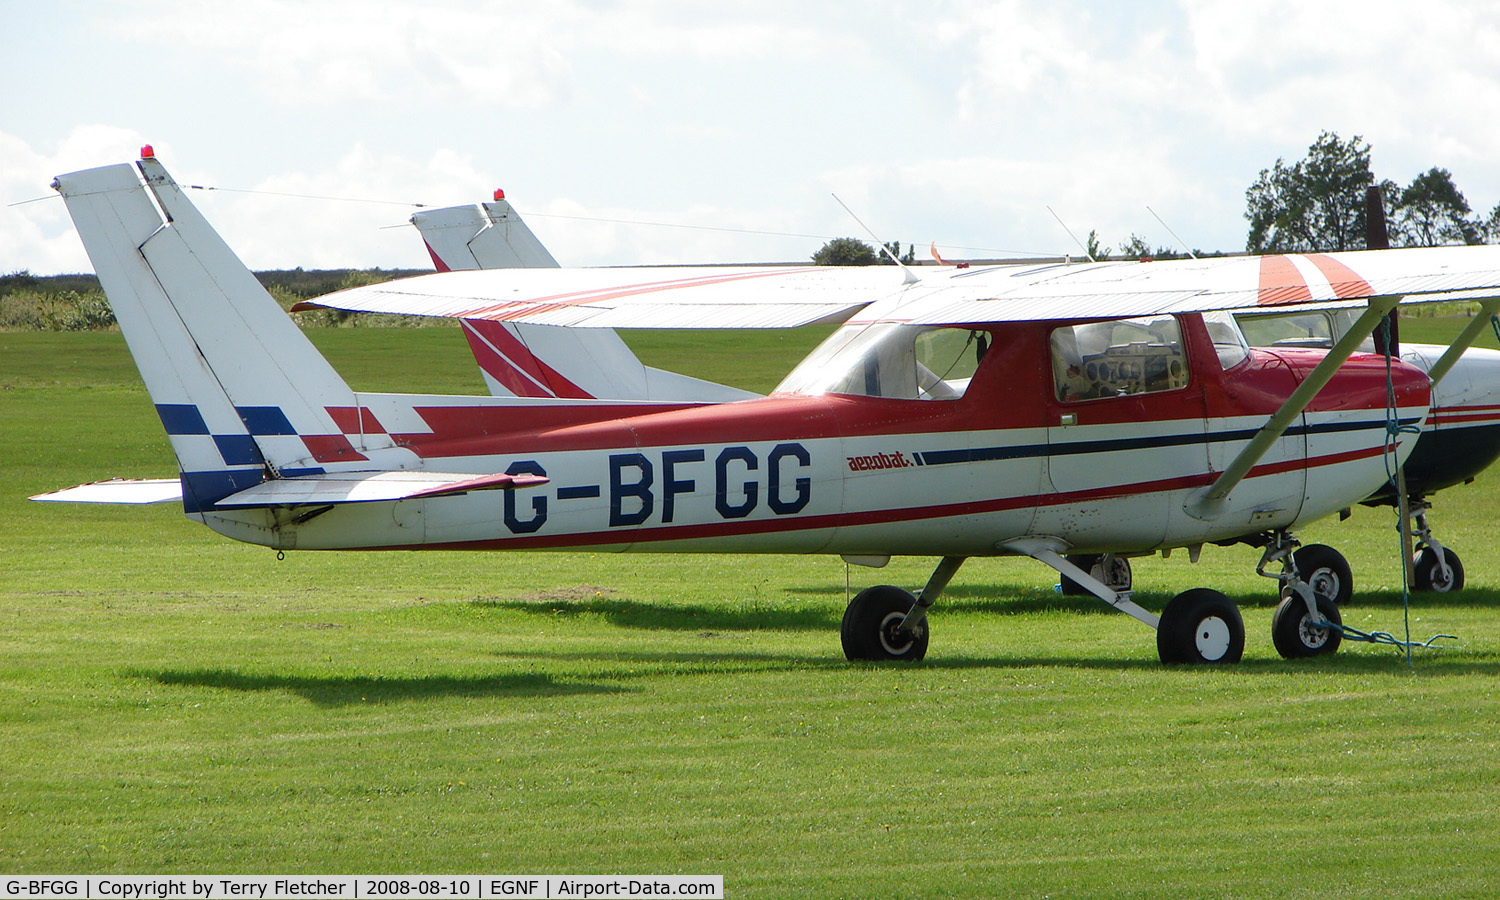 G-BFGG, 1977 Reims FRA150M Aerobat C/N 0321, Resident cessna 150M at Netherthorpe